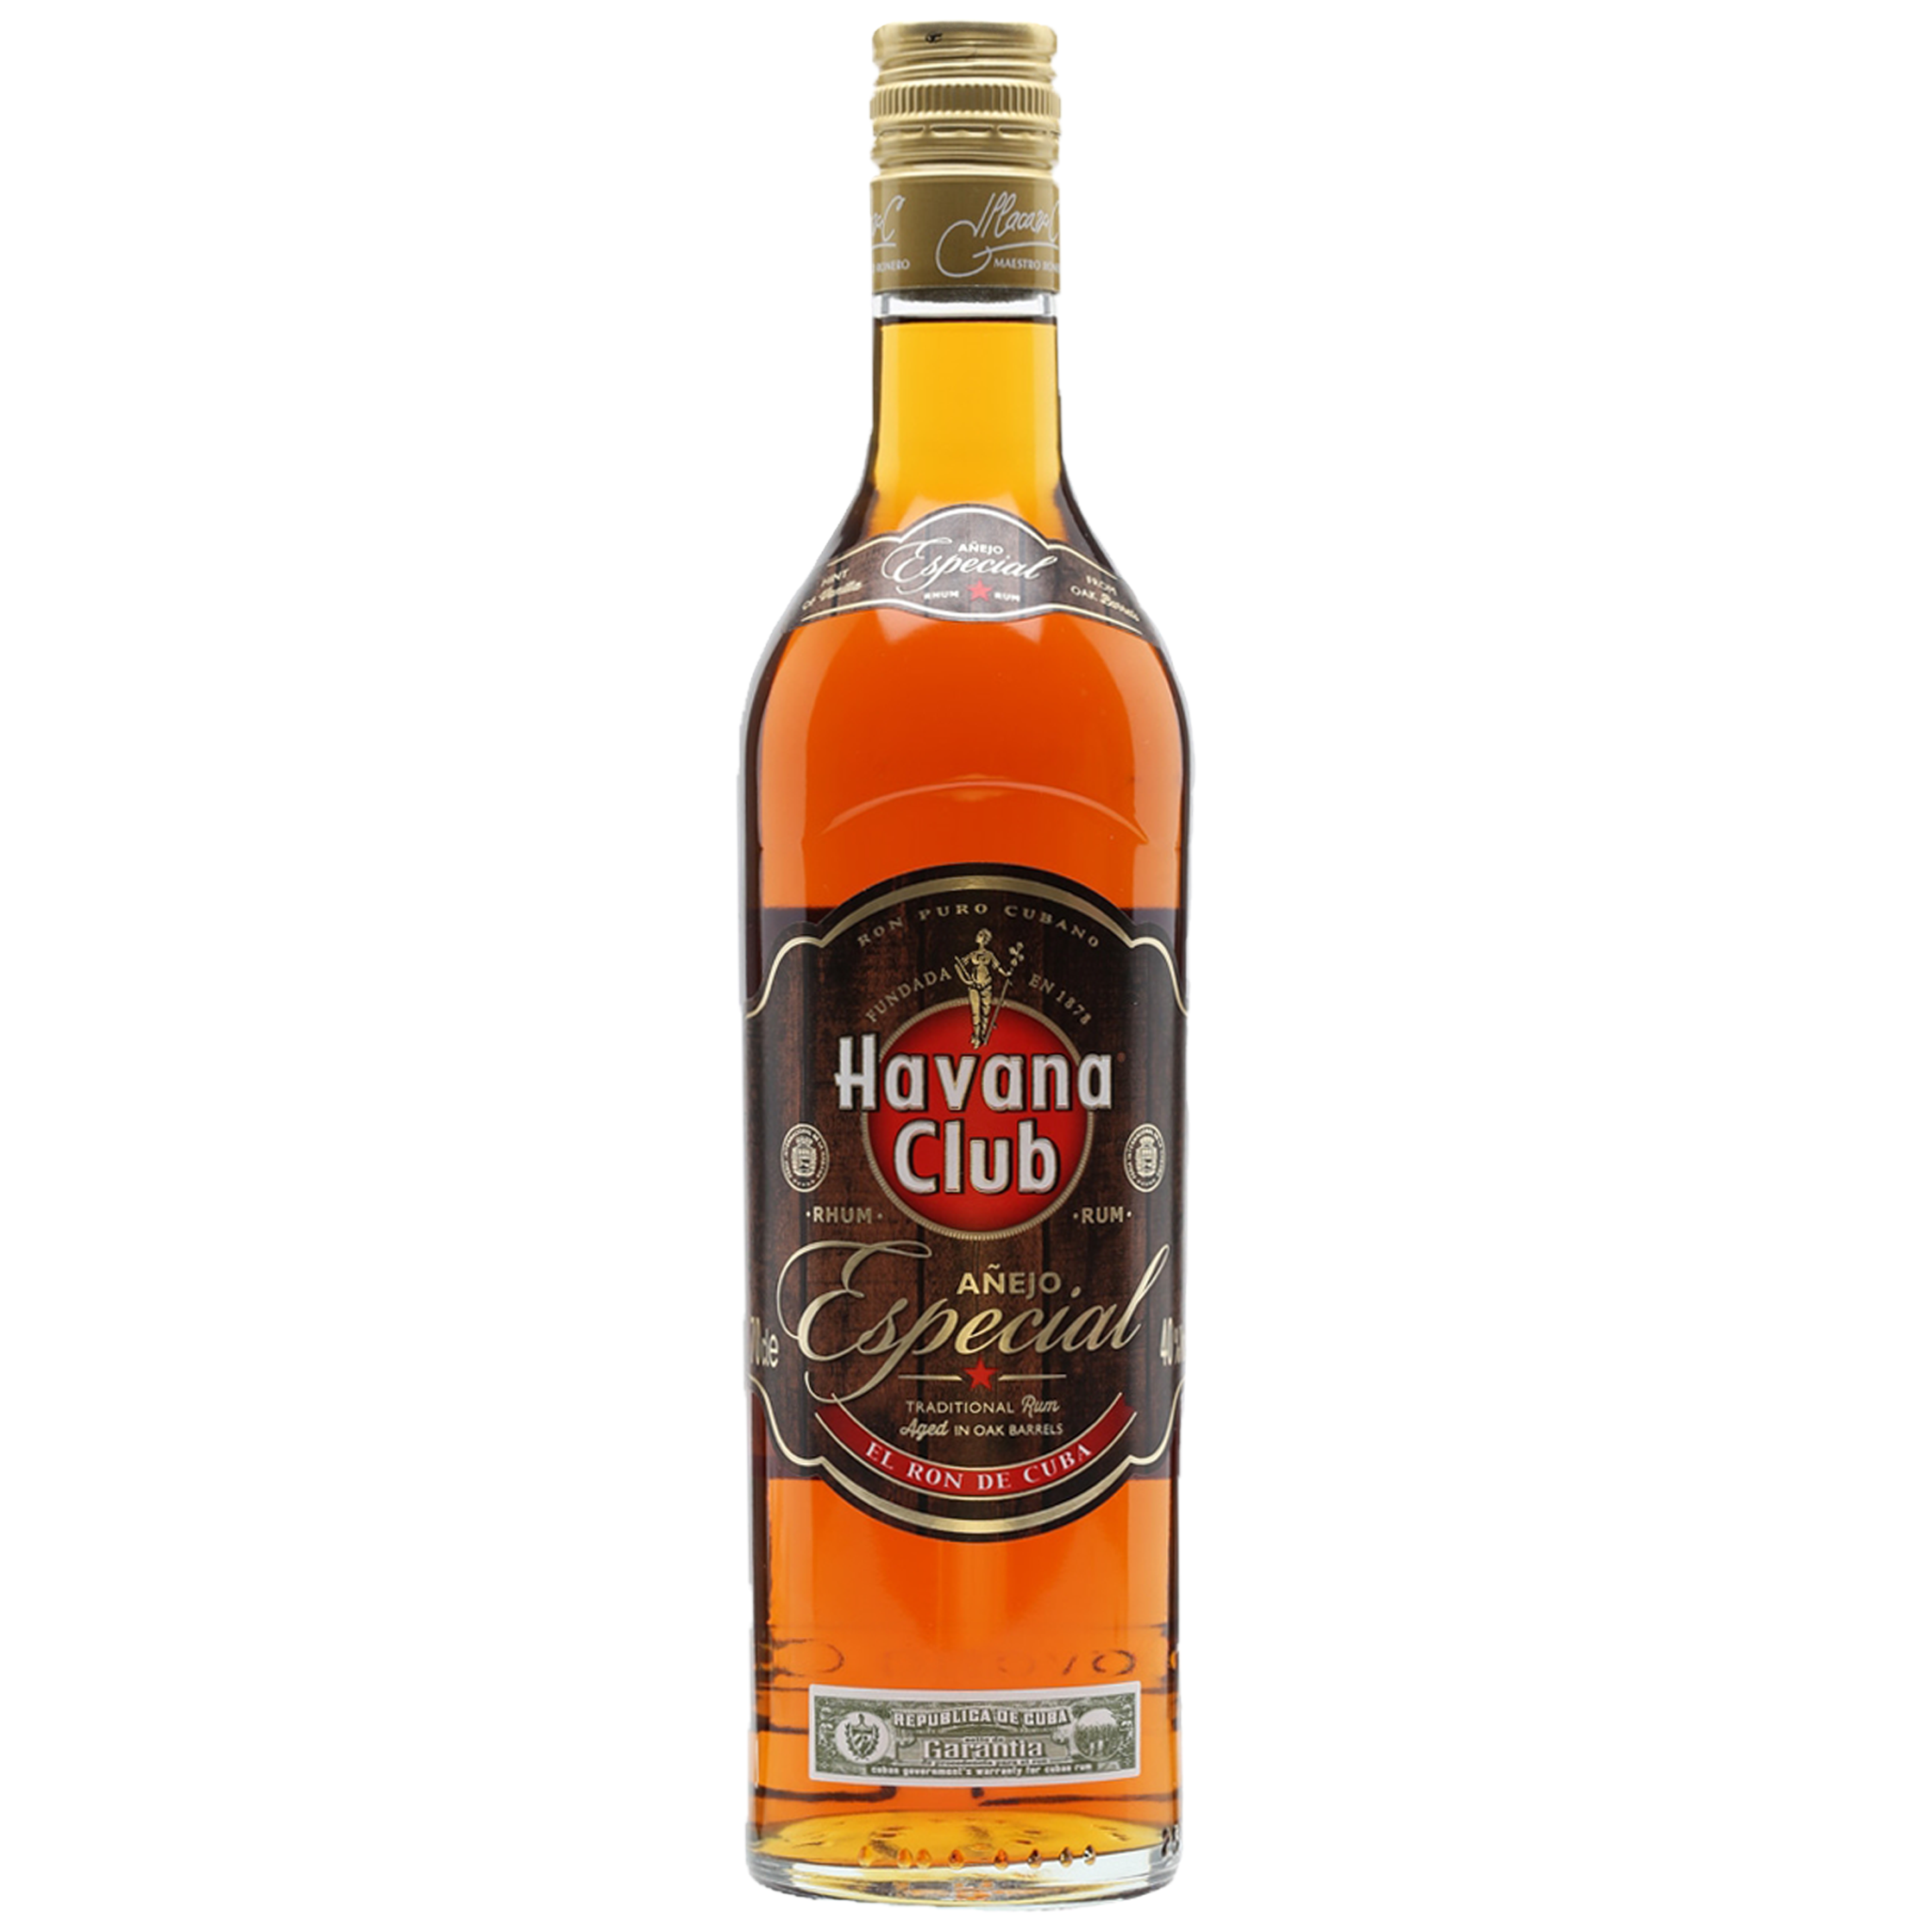 Vol. 40% Club Cuban 0,7l Havana Añejo Especial Rum